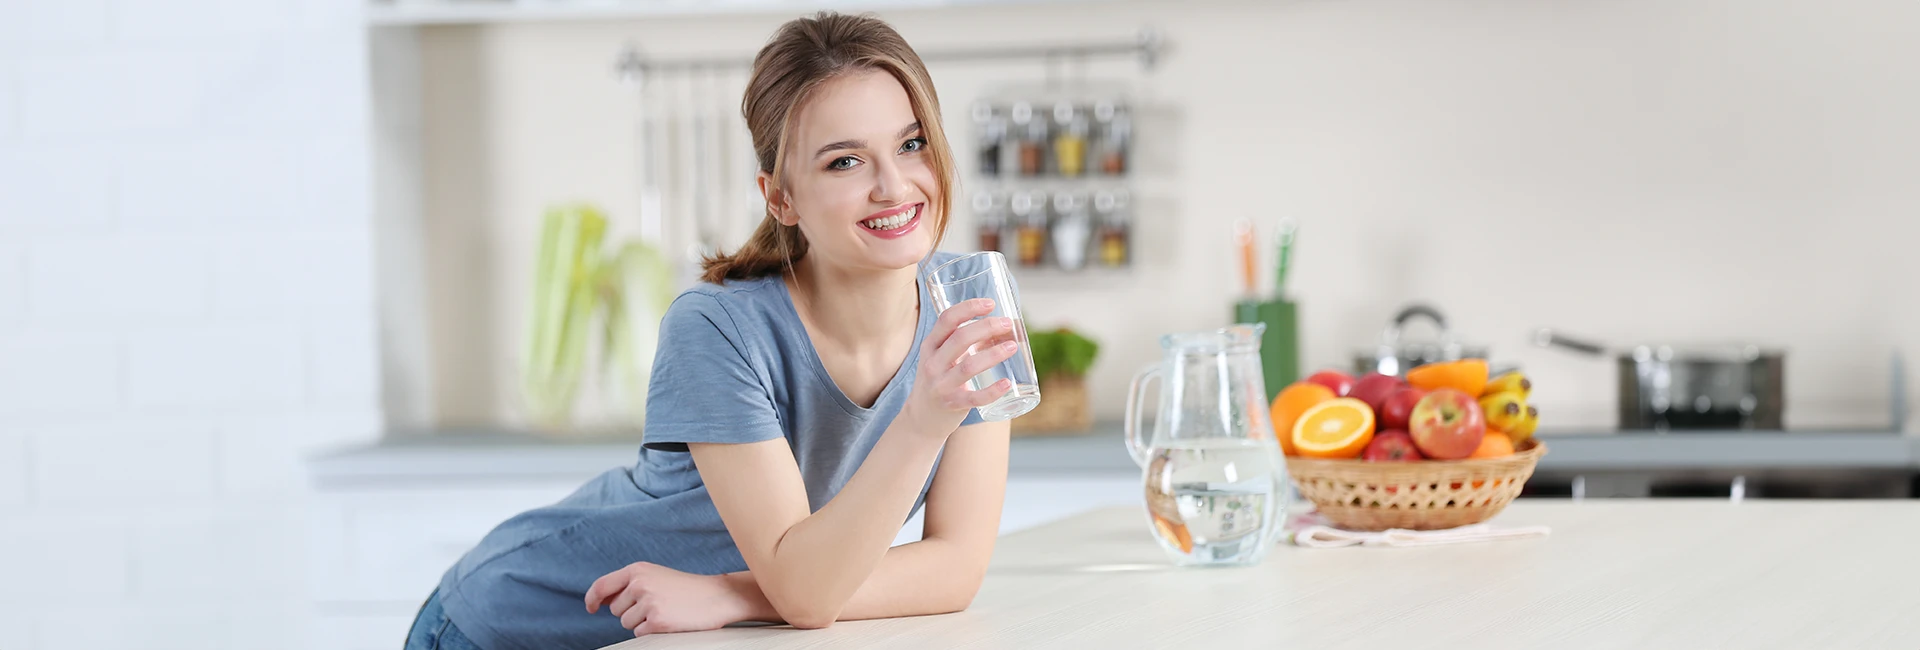 Une jeune femme souriante boit un verre d'eau dans sa cuisine